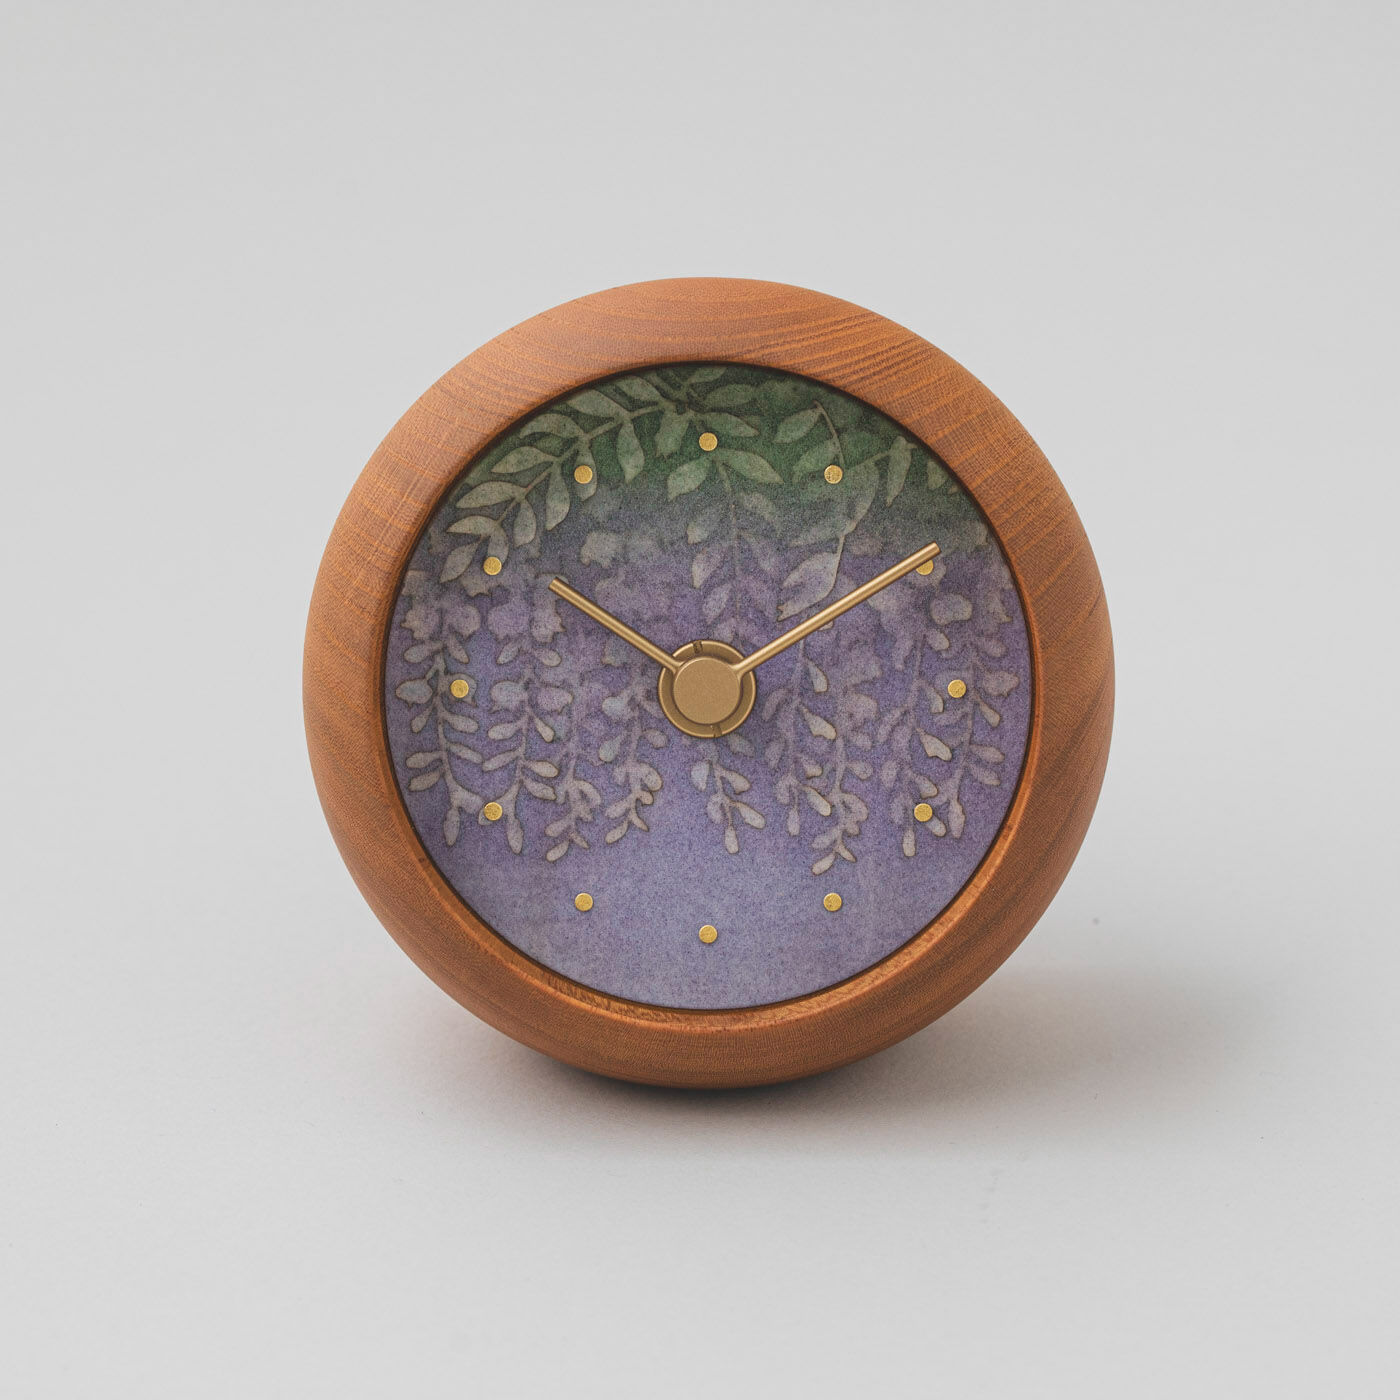 ＆Stories|金沢の時計職人が手掛けた たおやかに揺れる 藤の花に見惚れる置時計〈欅〉|時計のフレームには丈夫で木目が美しい欅を使用。